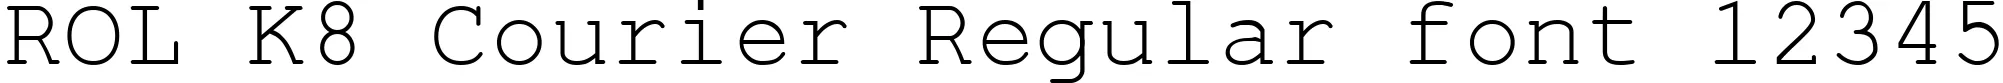 Dynamic ROL K8 Courier Regular Font Preview https://safirsoft.com